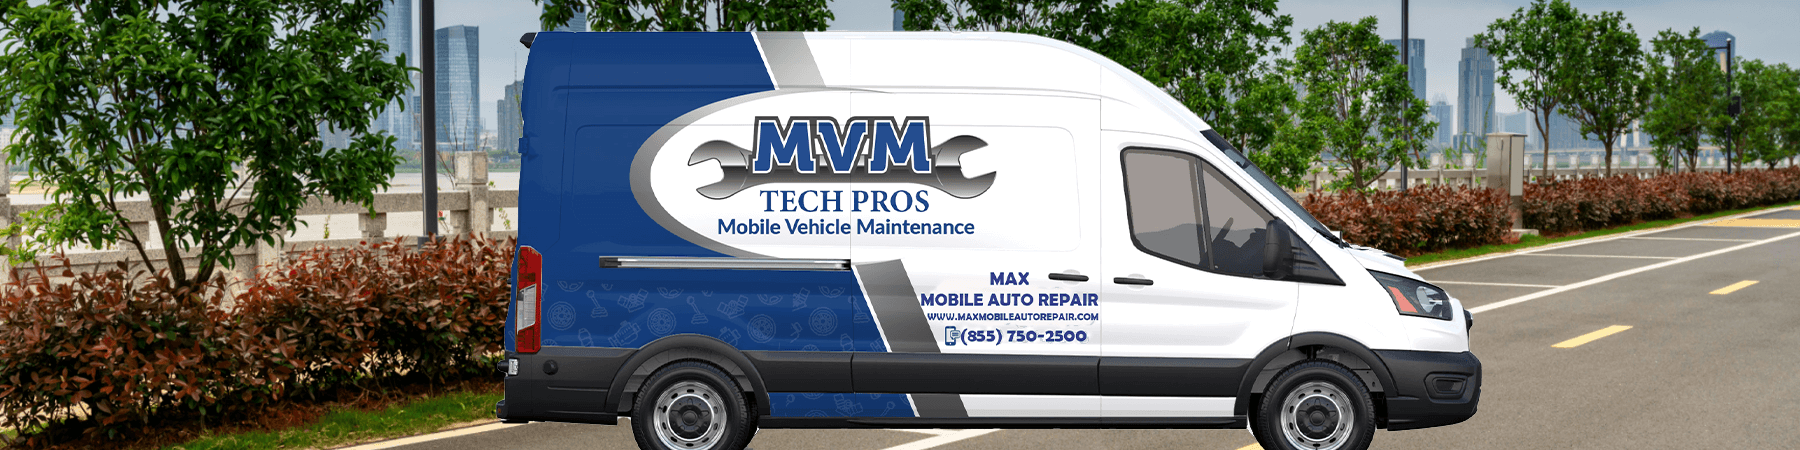 mvm tech pros service vehicle unit